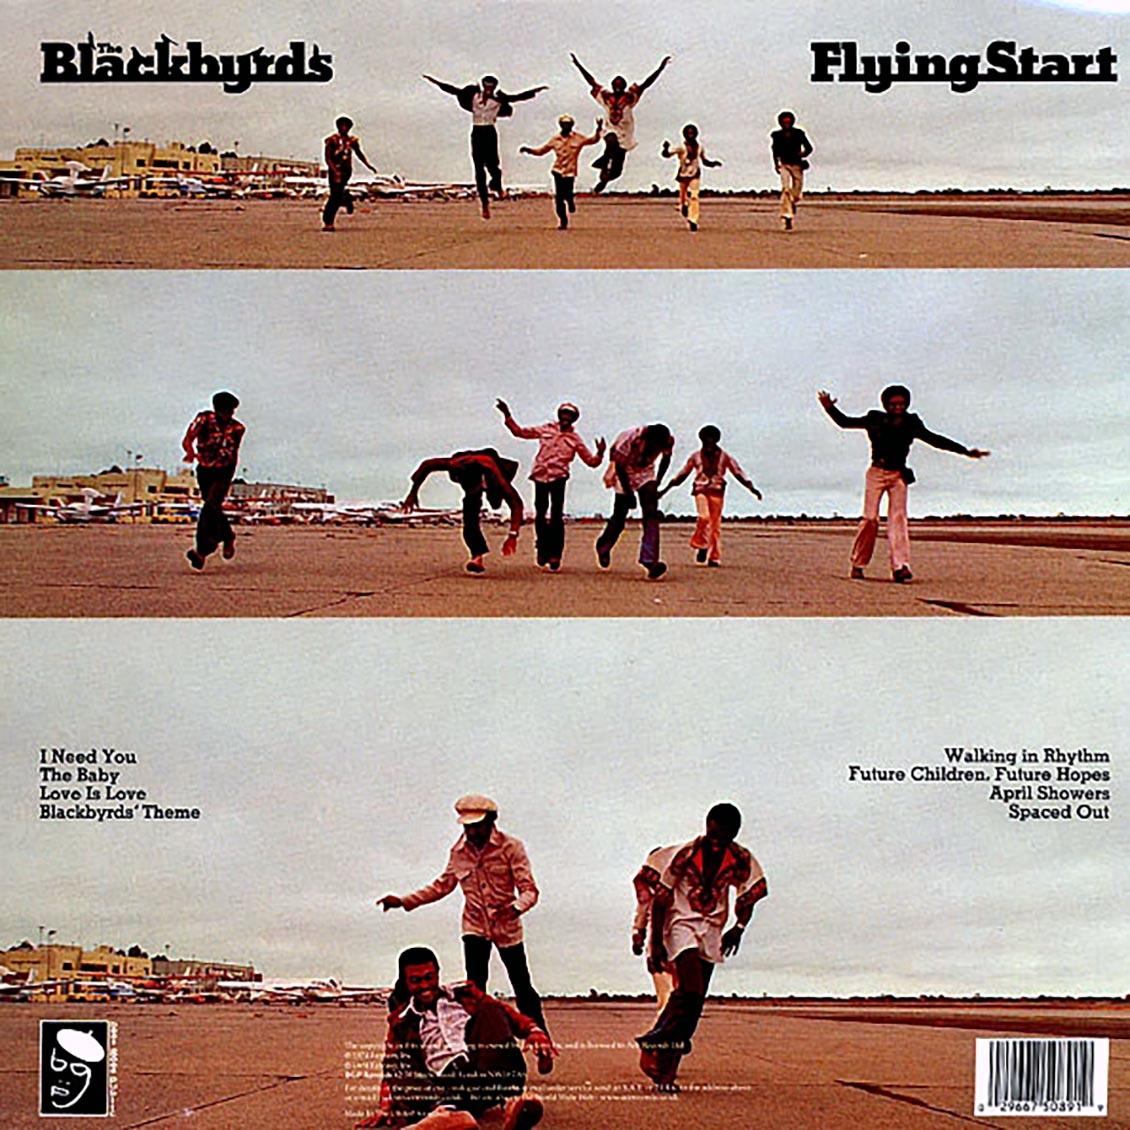 The Blackbyrds - Flying Start [1996 Reissue] [New Vinyl Record LP]